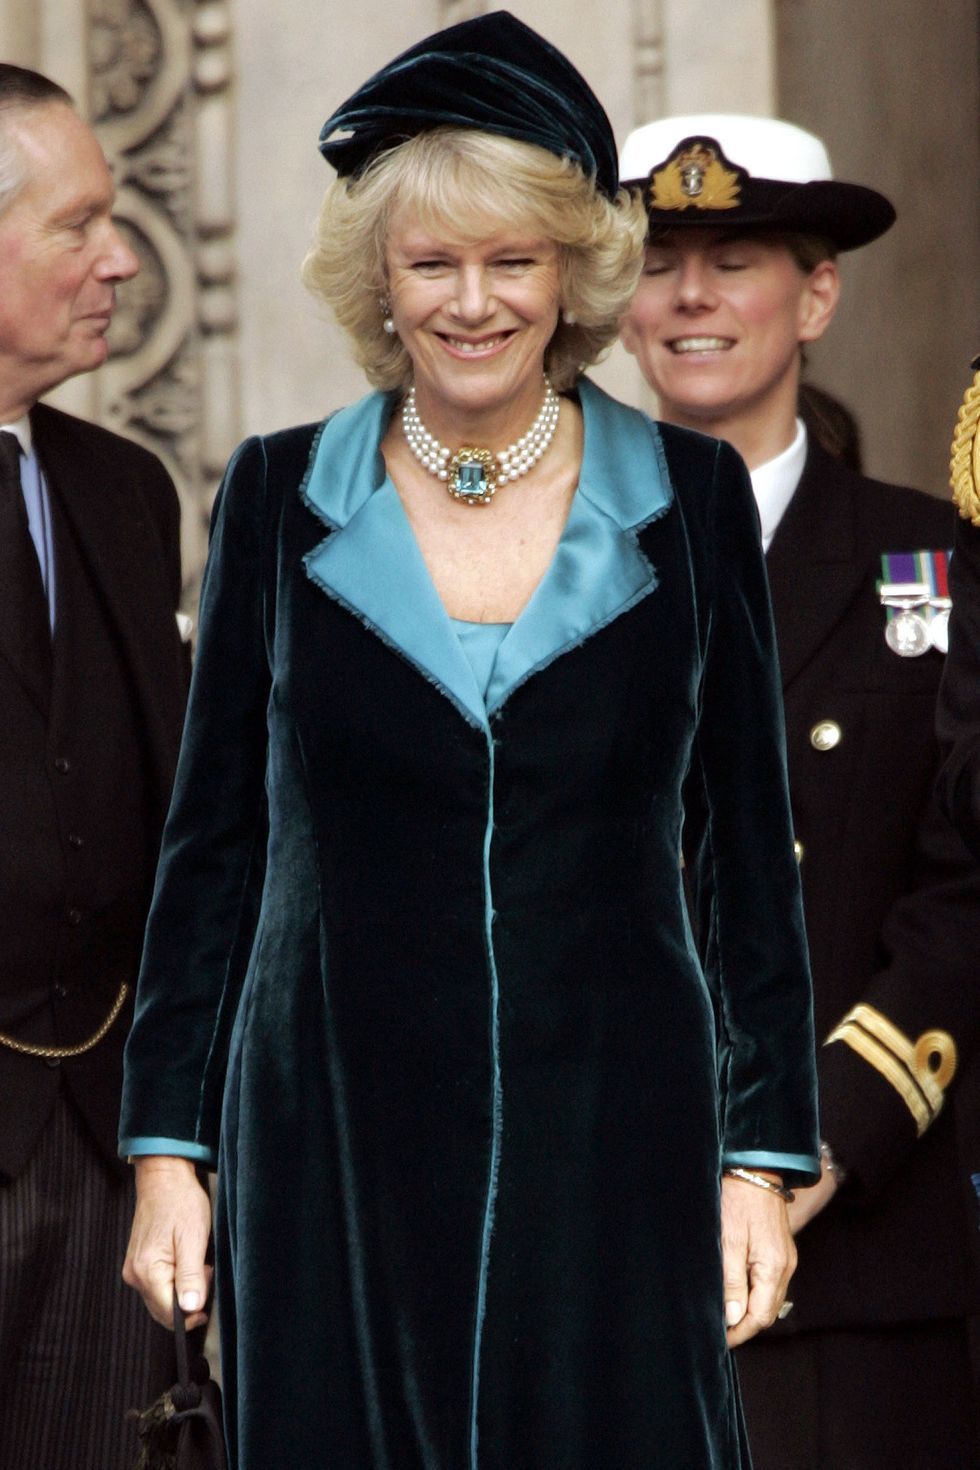 17 năm mặc đồ thanh lịch, Vương hậu nước Anh tương lai nổi bật nhờ một món đồ - Ảnh 6